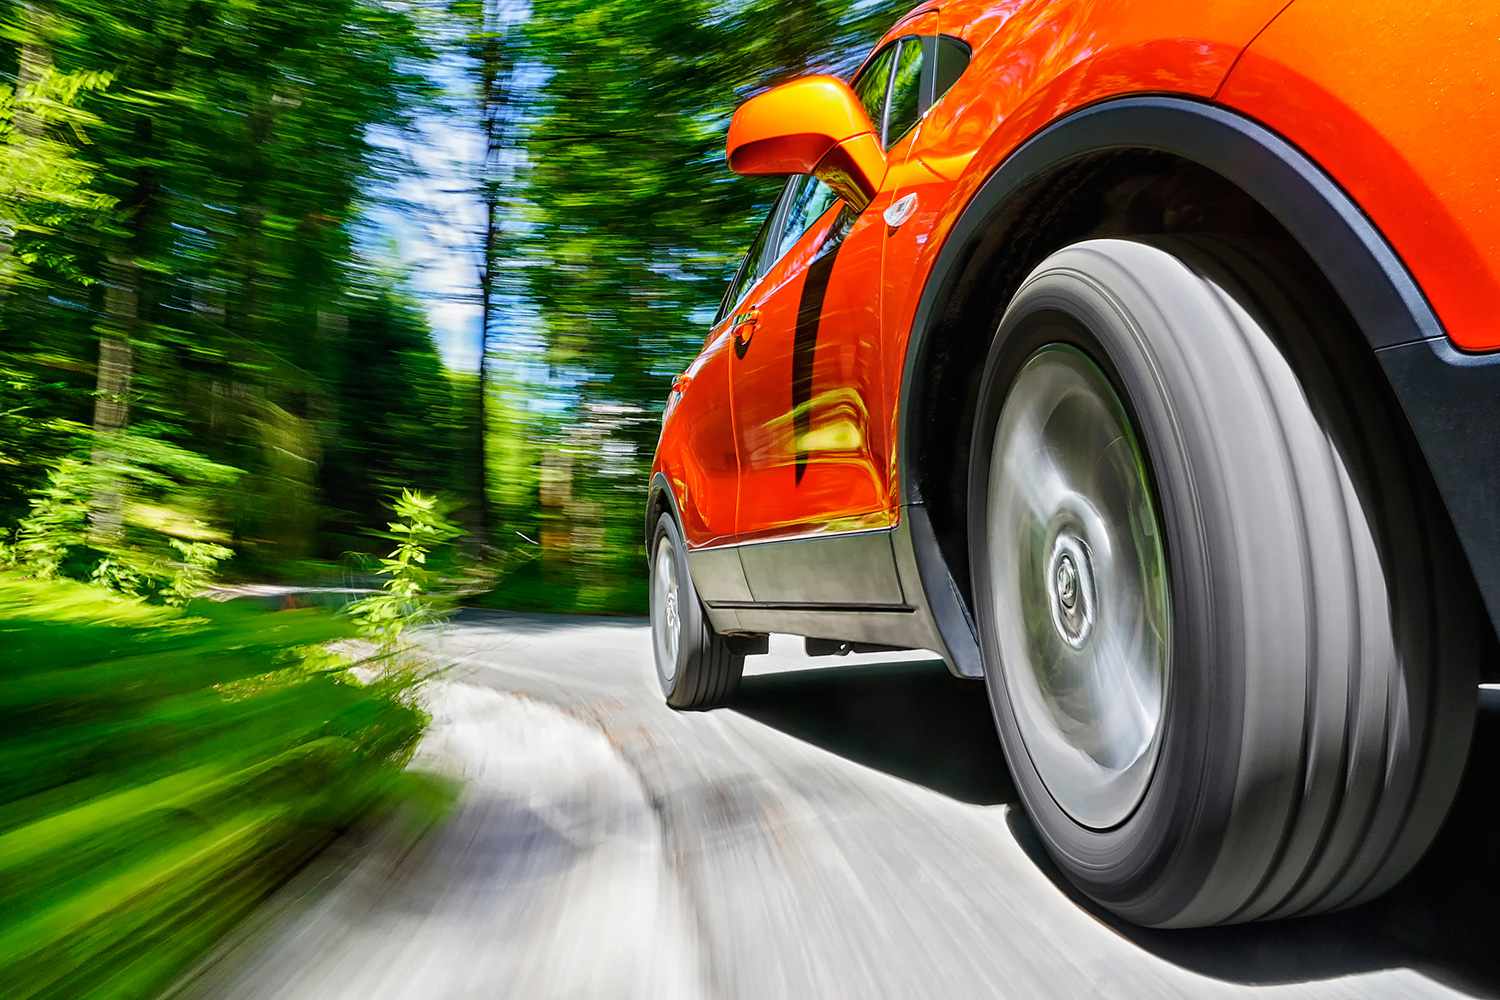 Lốp xe ảnh hưởng thế nào đến mức tiêu hao nhiên liệu?